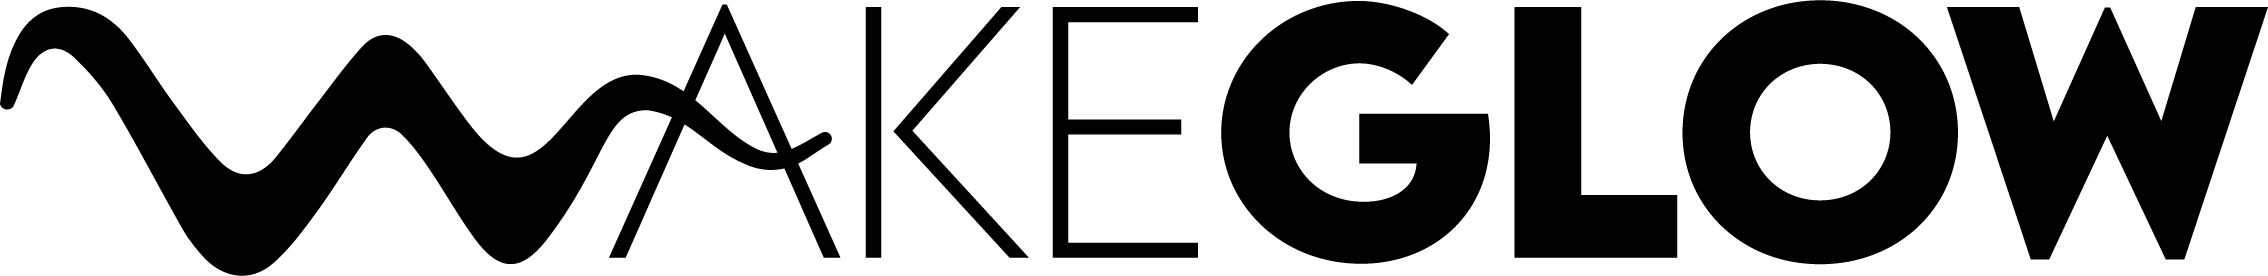 wakeglow logo